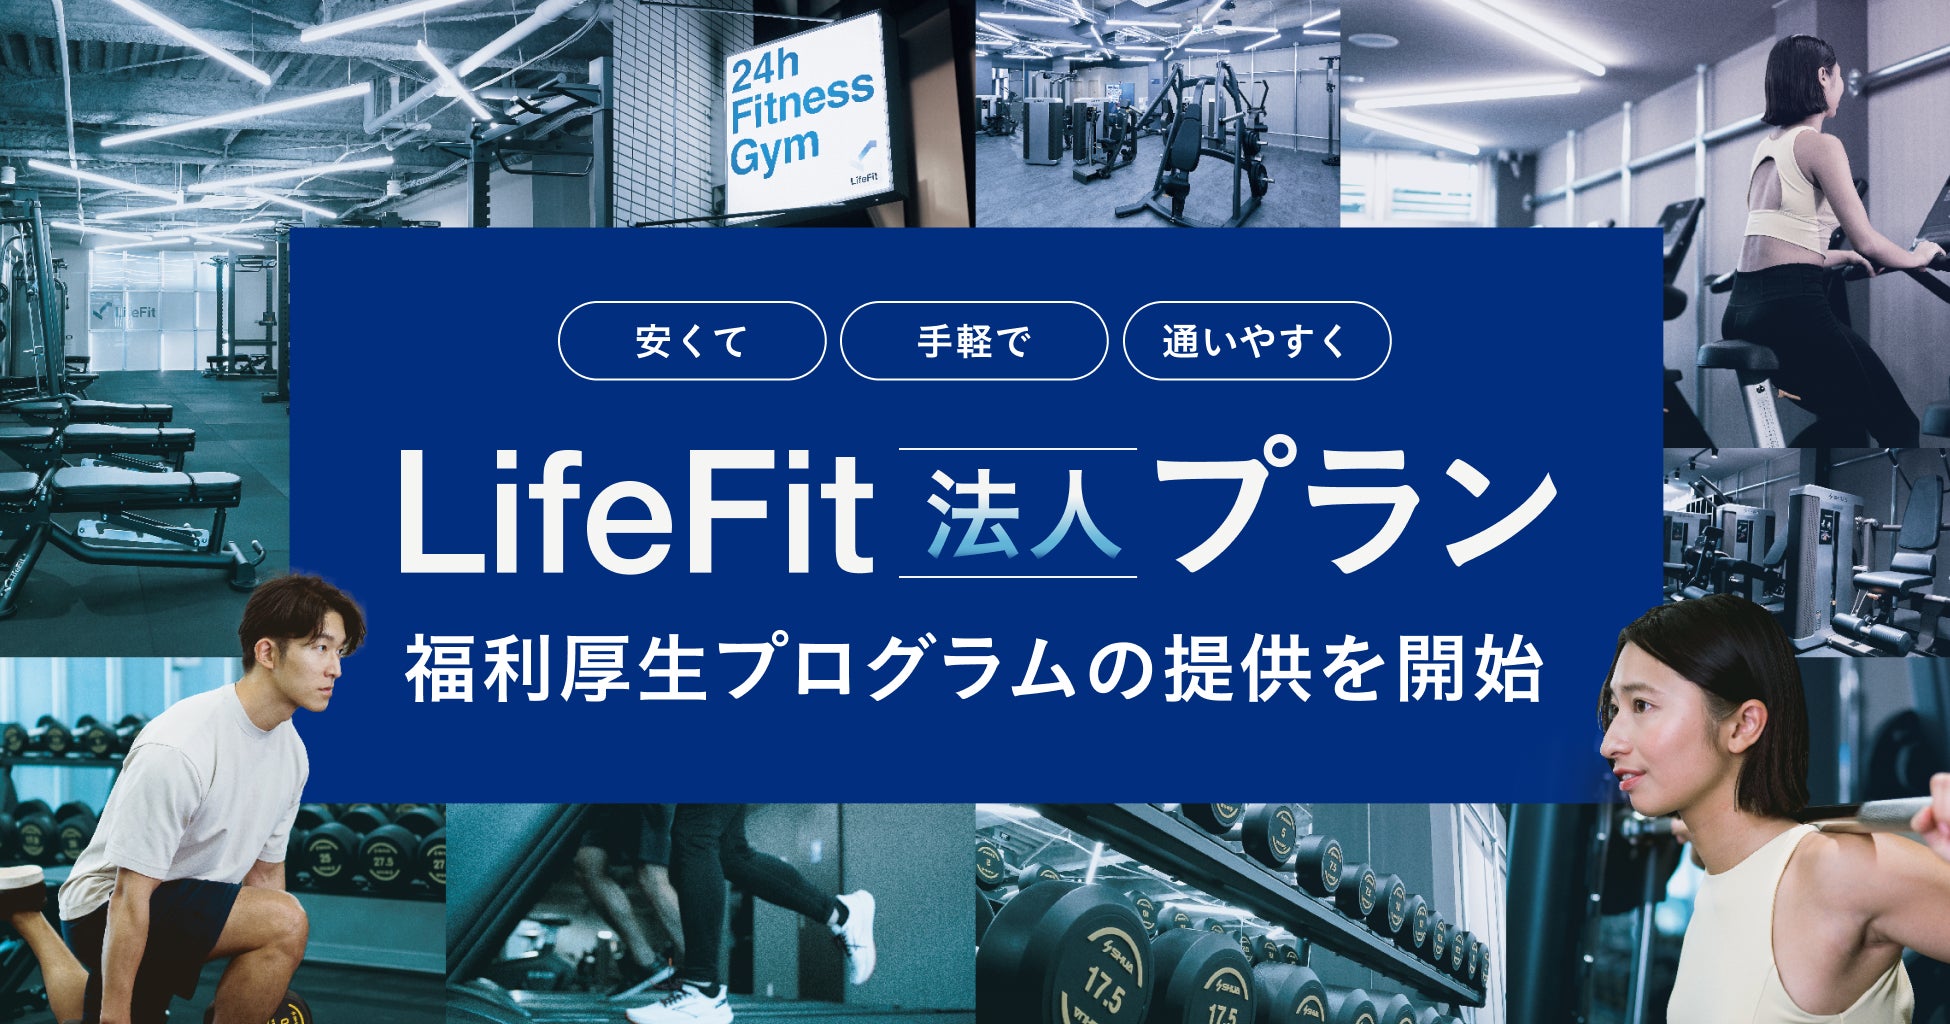 運動は、安くて、手軽で、通いやすく。「LifeFit」が法人向けに福利厚生プログラムの提供を開始！